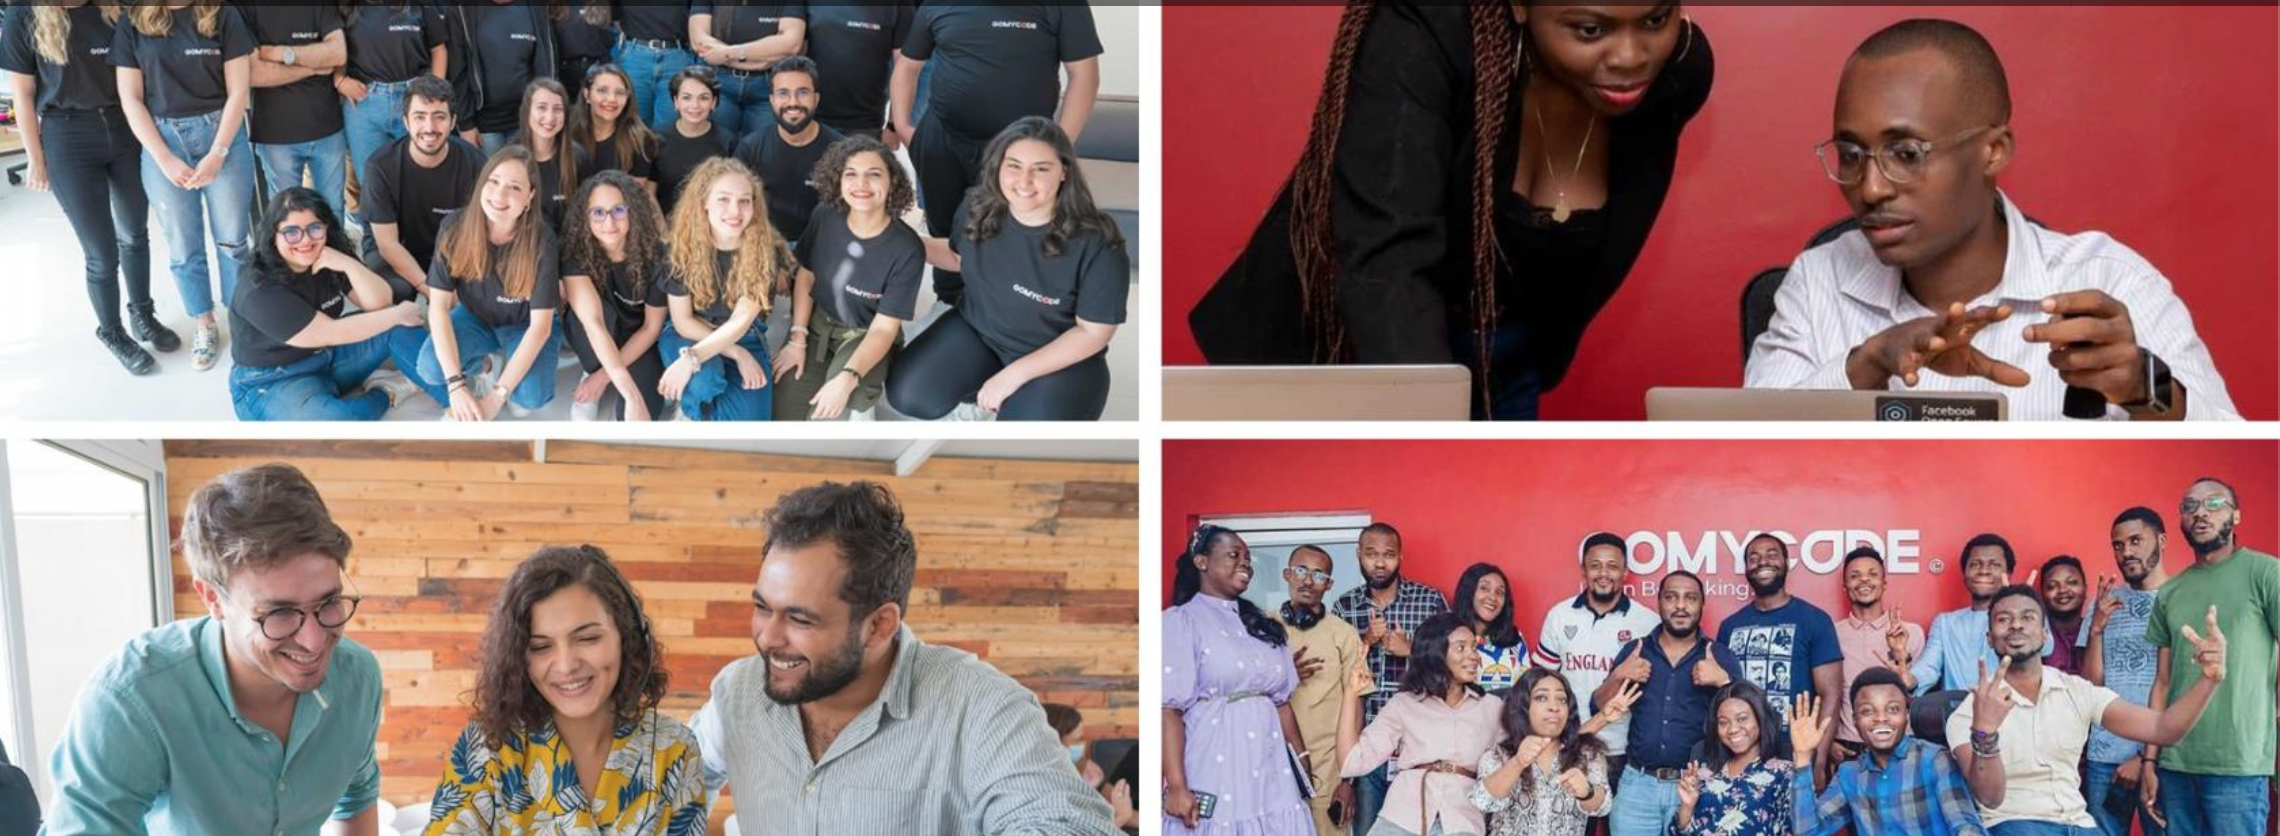 GOMYCODE, 1ère startup Edtech en Tunisie, lève 8 M$ en Série A grâce à Africinvest et Proparco